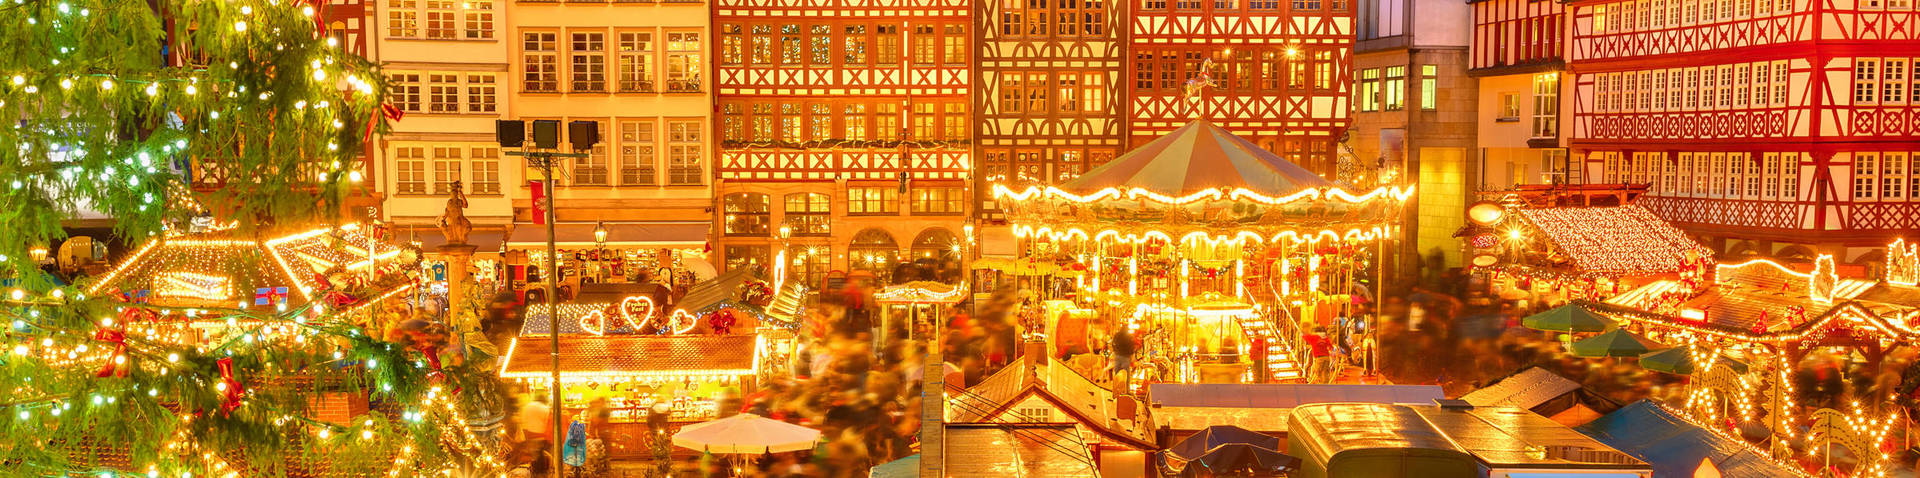 Weihnachtsshopping in Frankfurt am Main - Offizielle Webseite der H-Hotels